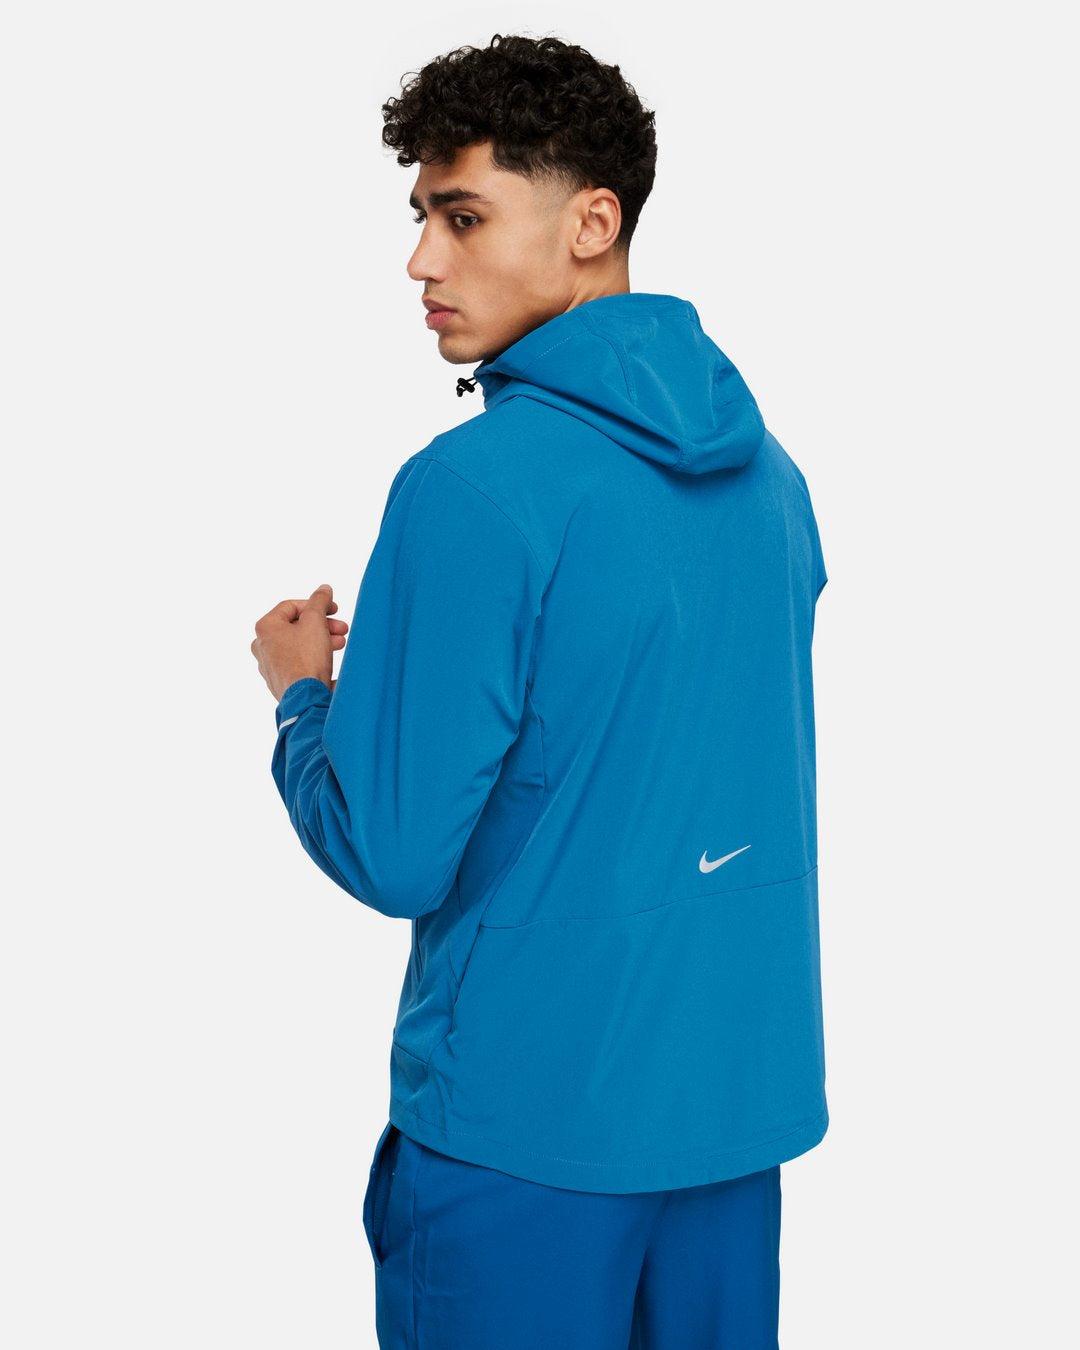 Veste Nike Unlimited - Bleu